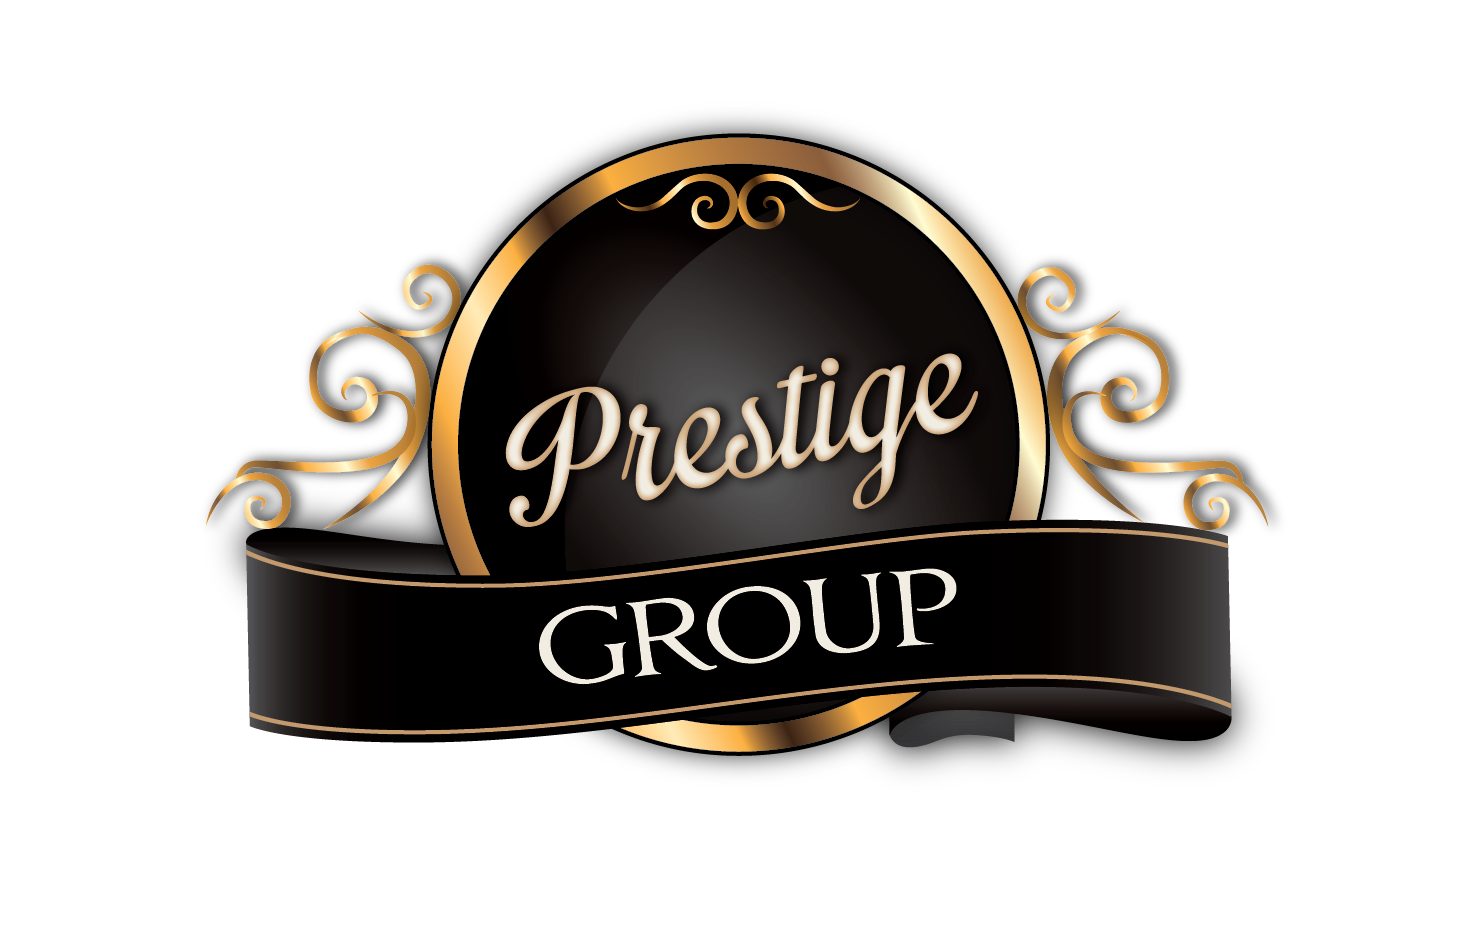 Prestige logo, Vector Logo of Prestige brand free download (eps, ai, png,  cdr) formats